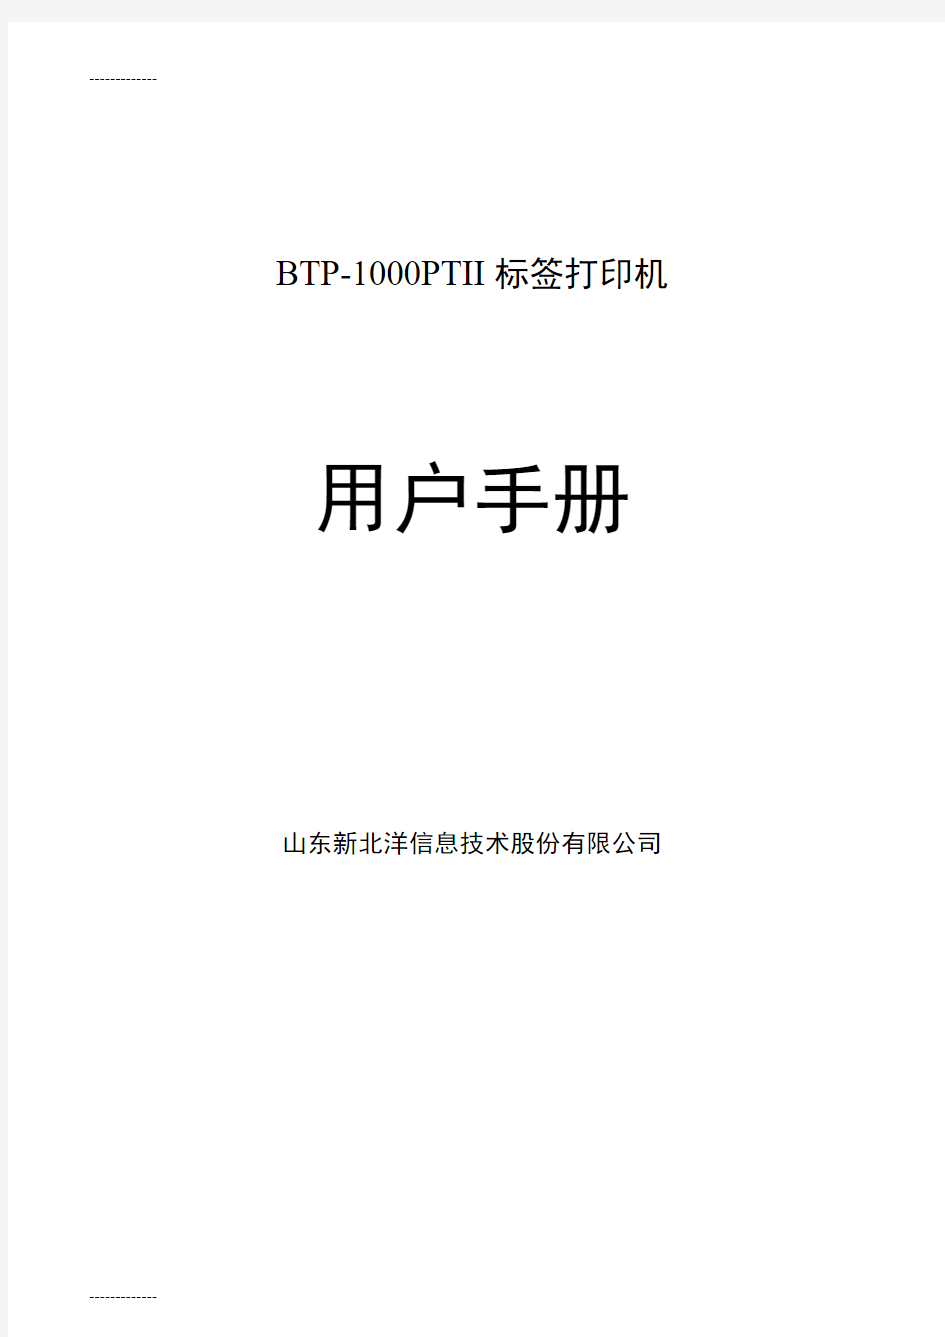 [整理]BTP-1000PTII用户手册.